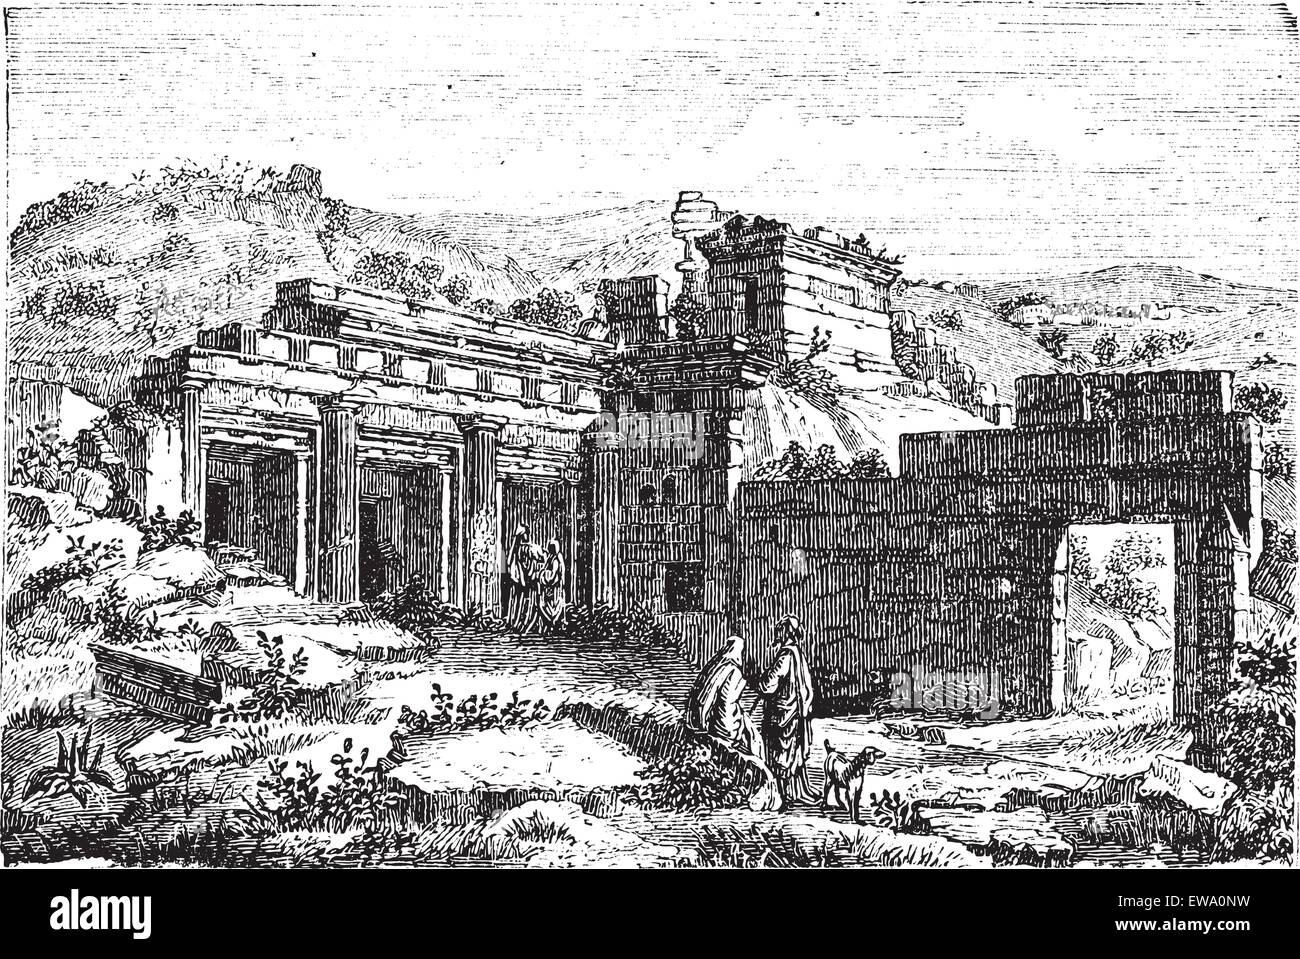 Ruines de Cyrène, en Libye, Shahhat, durant les années 1890, gravure d'époque. Vieille illustration gravée des ruines de Cyrène. Illustration de Vecteur